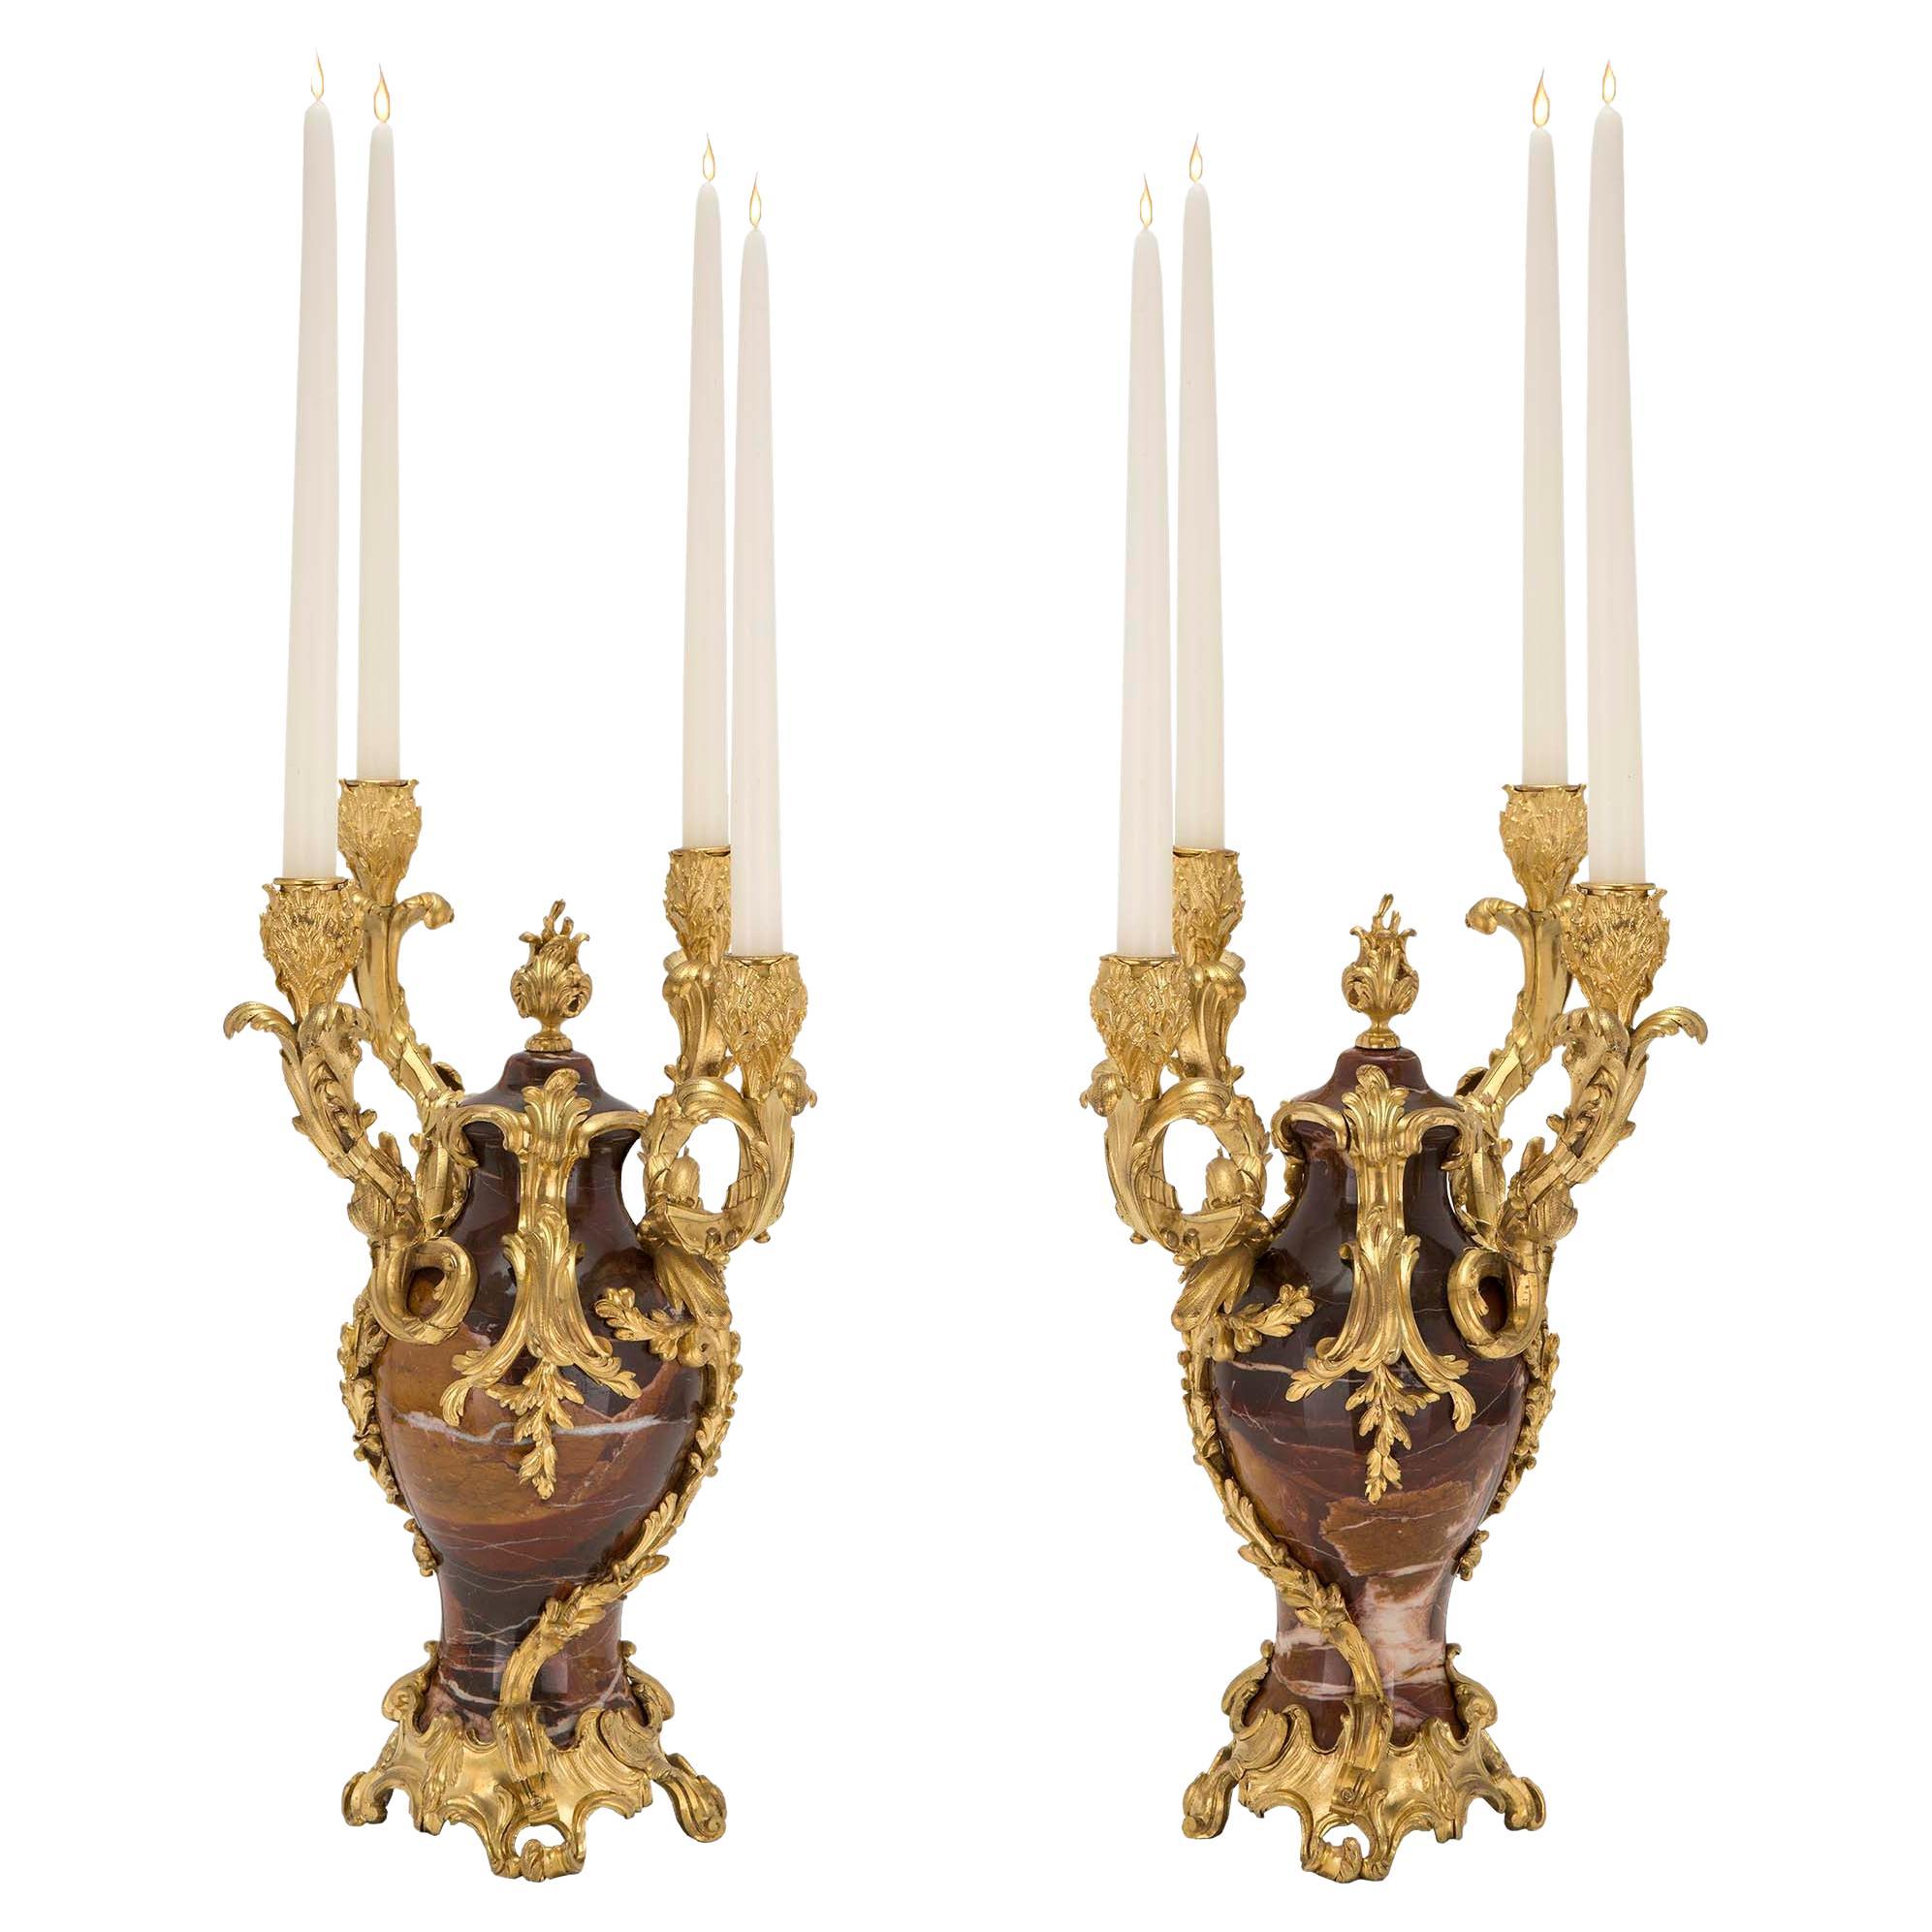 Paire de candélabres français de style Louis XV du XIXe siècle, signés F. Linke